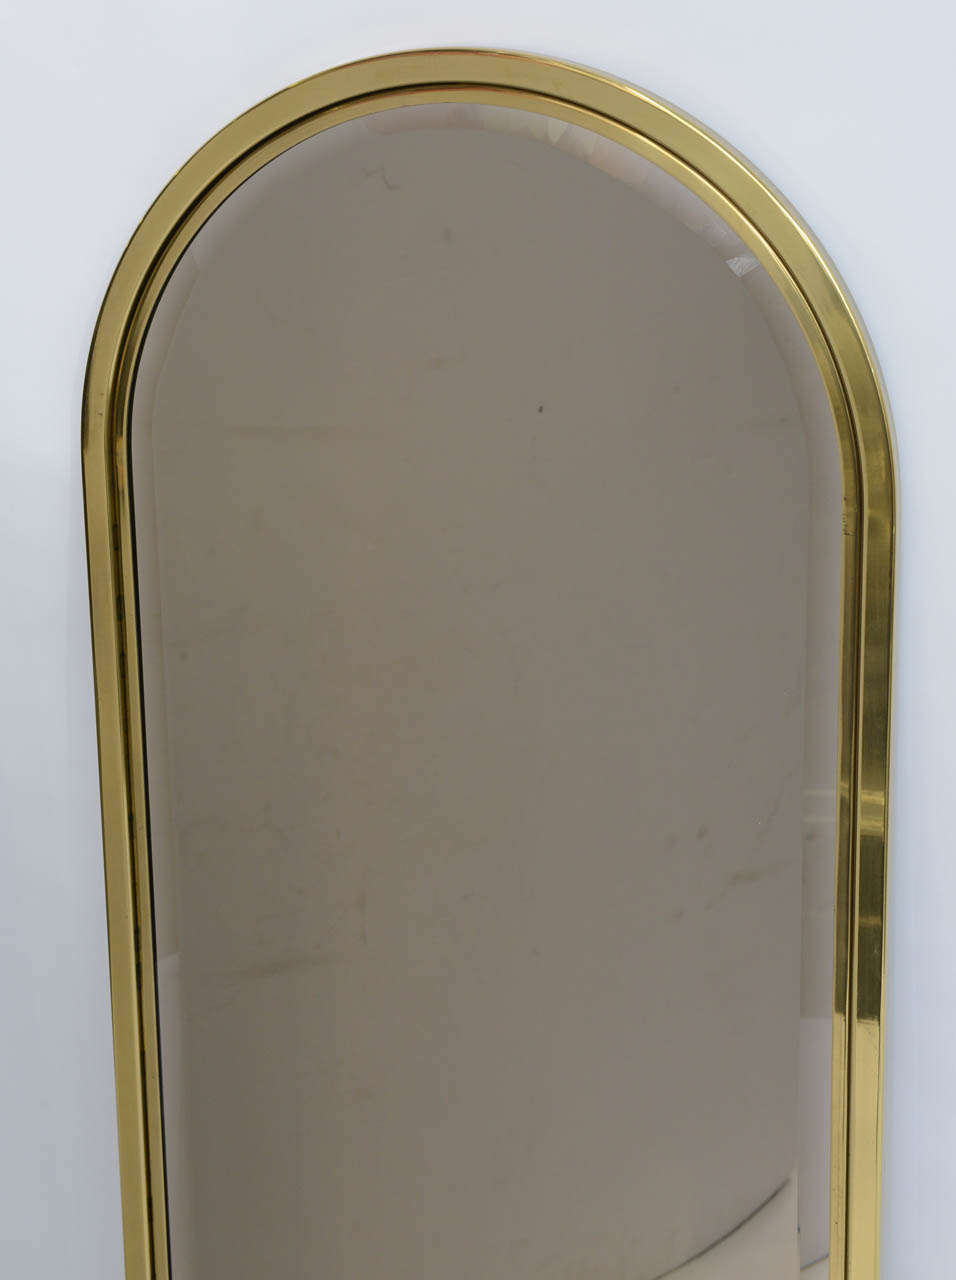 arched brass mirror